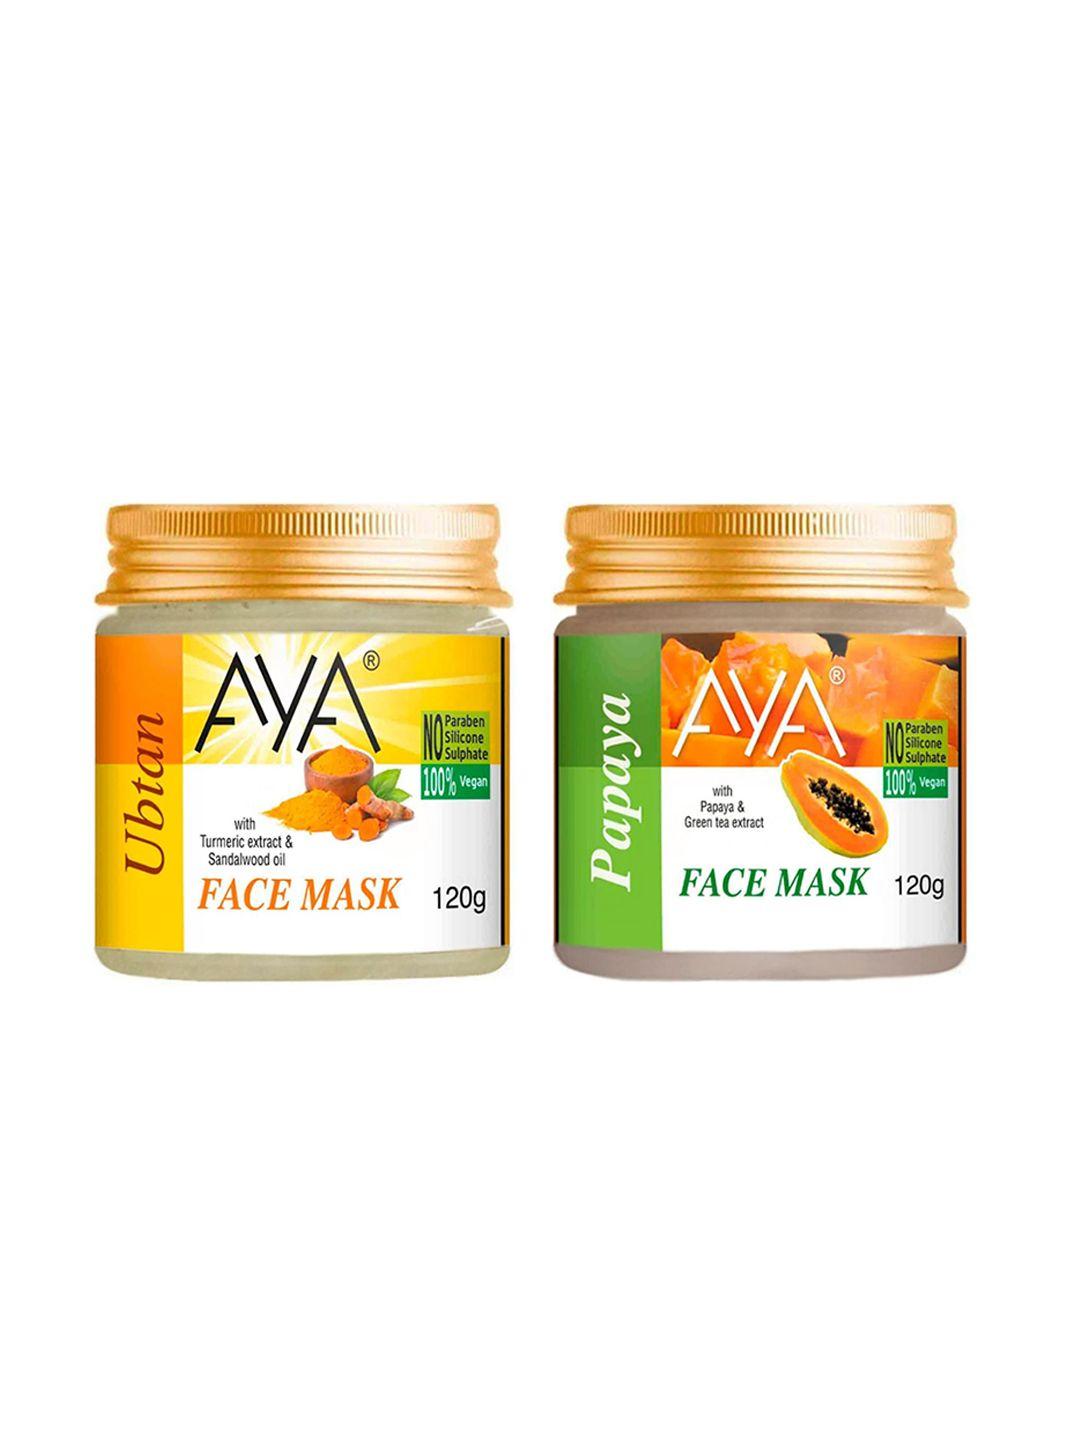 aya set of 2 paraben free face masks - ubtan & papaya - 120g each